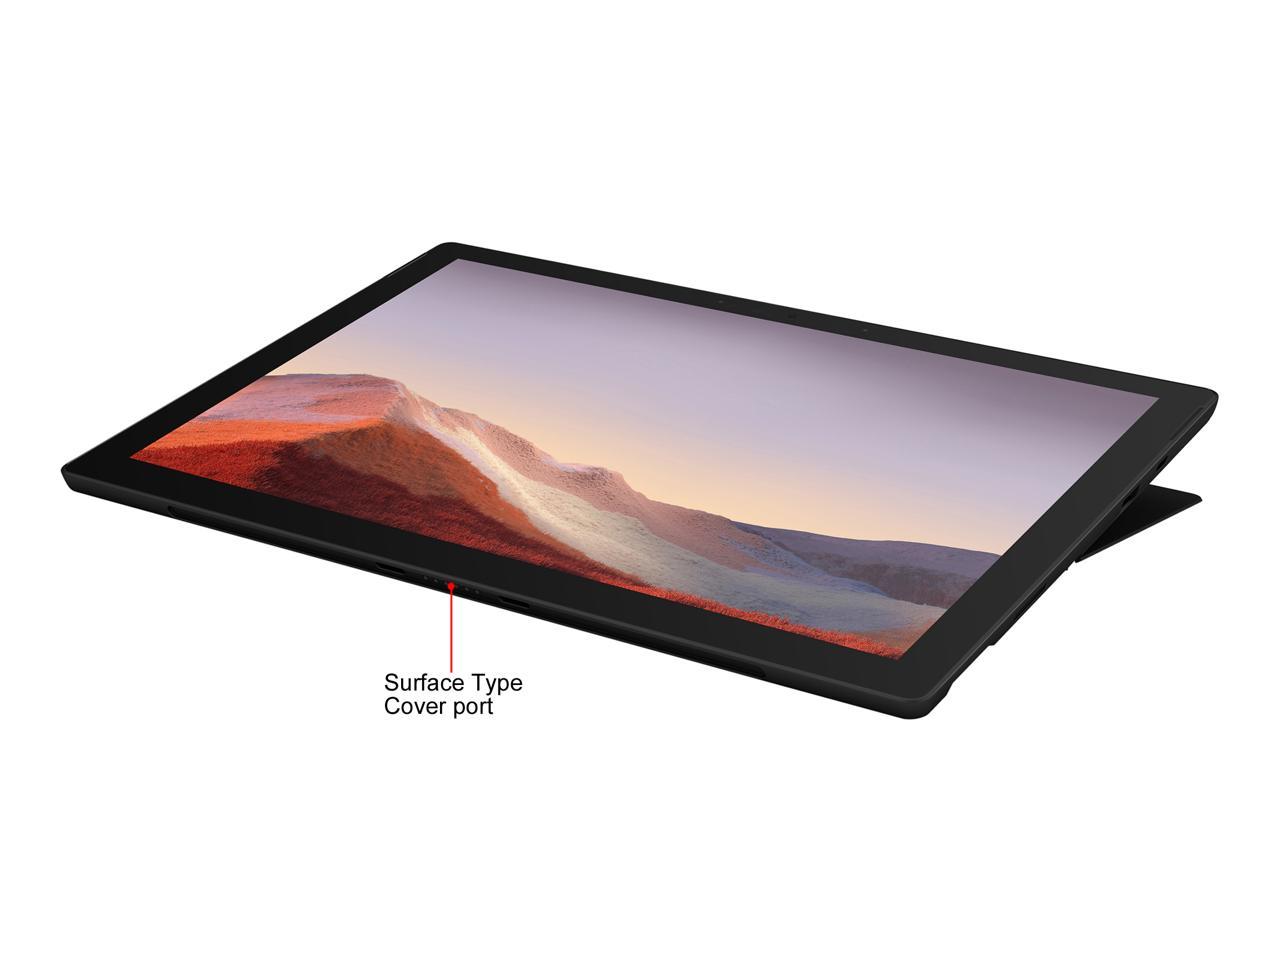 Microsoft - Surface Pro 7 - 12.3